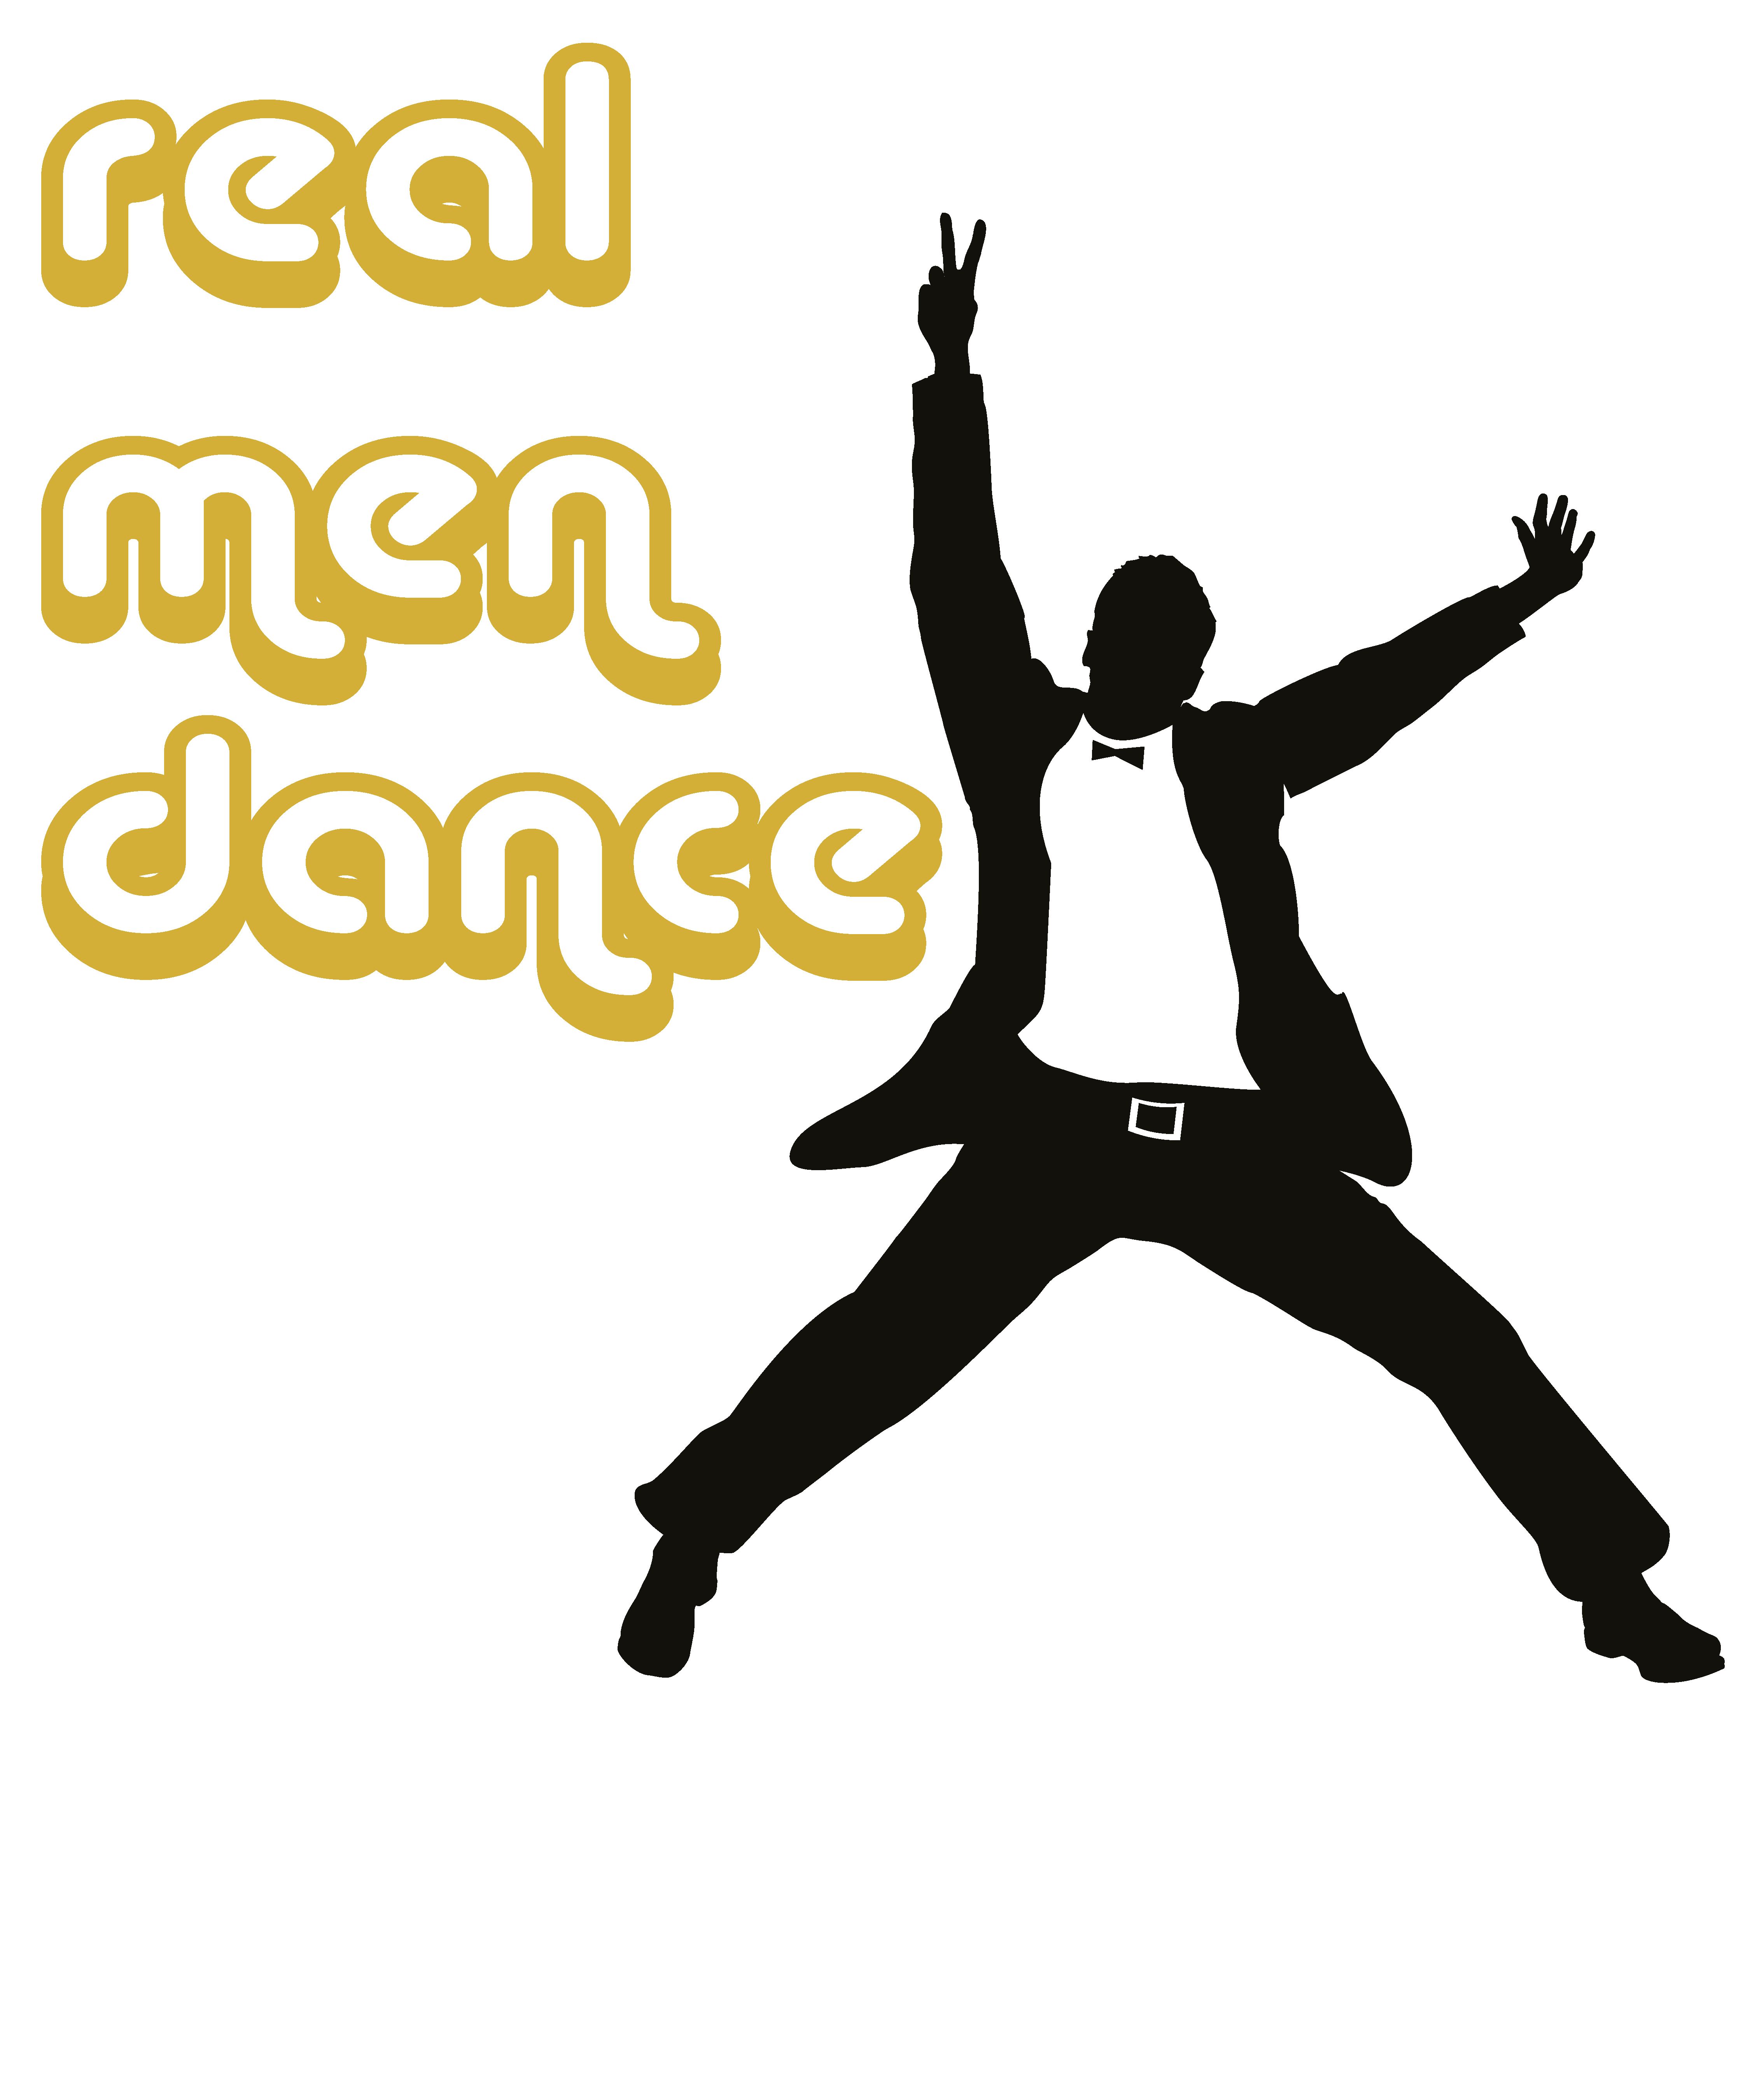 real men dance